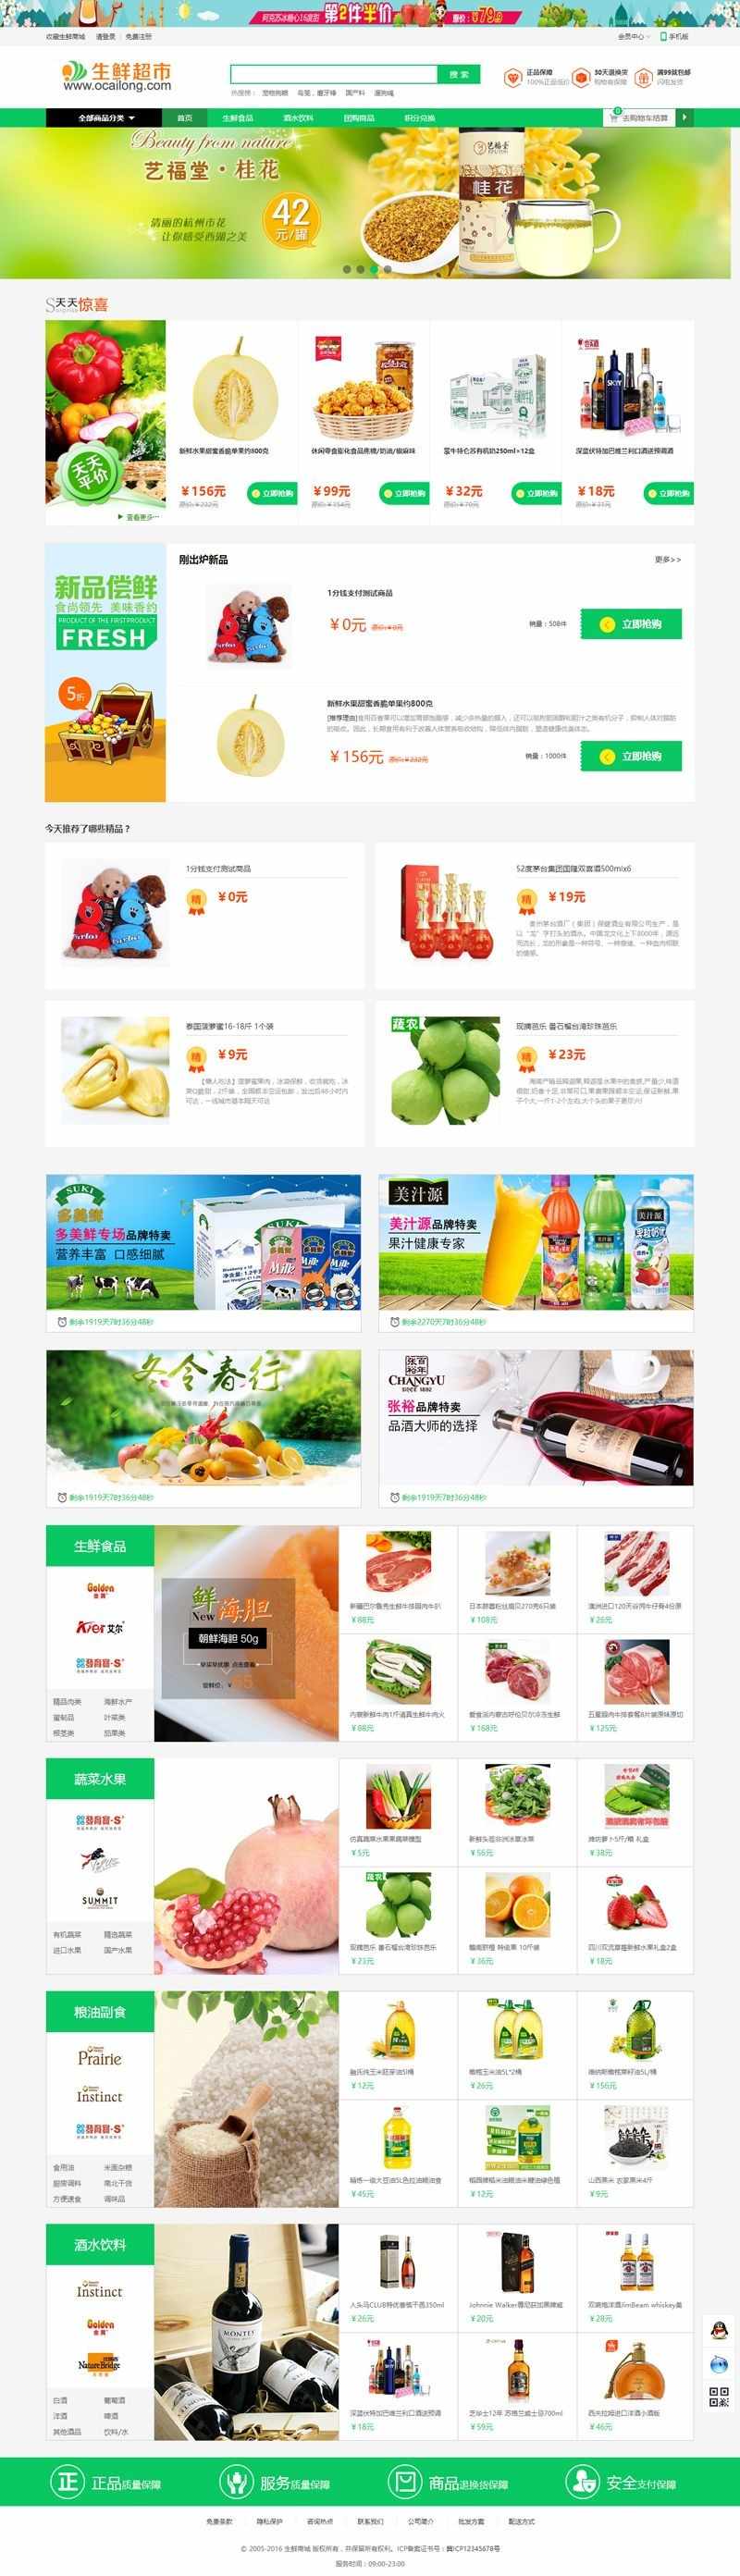 Ecshop生鲜超市农产品网站整站源码Ecshop生鲜超市农产品网站整站源码